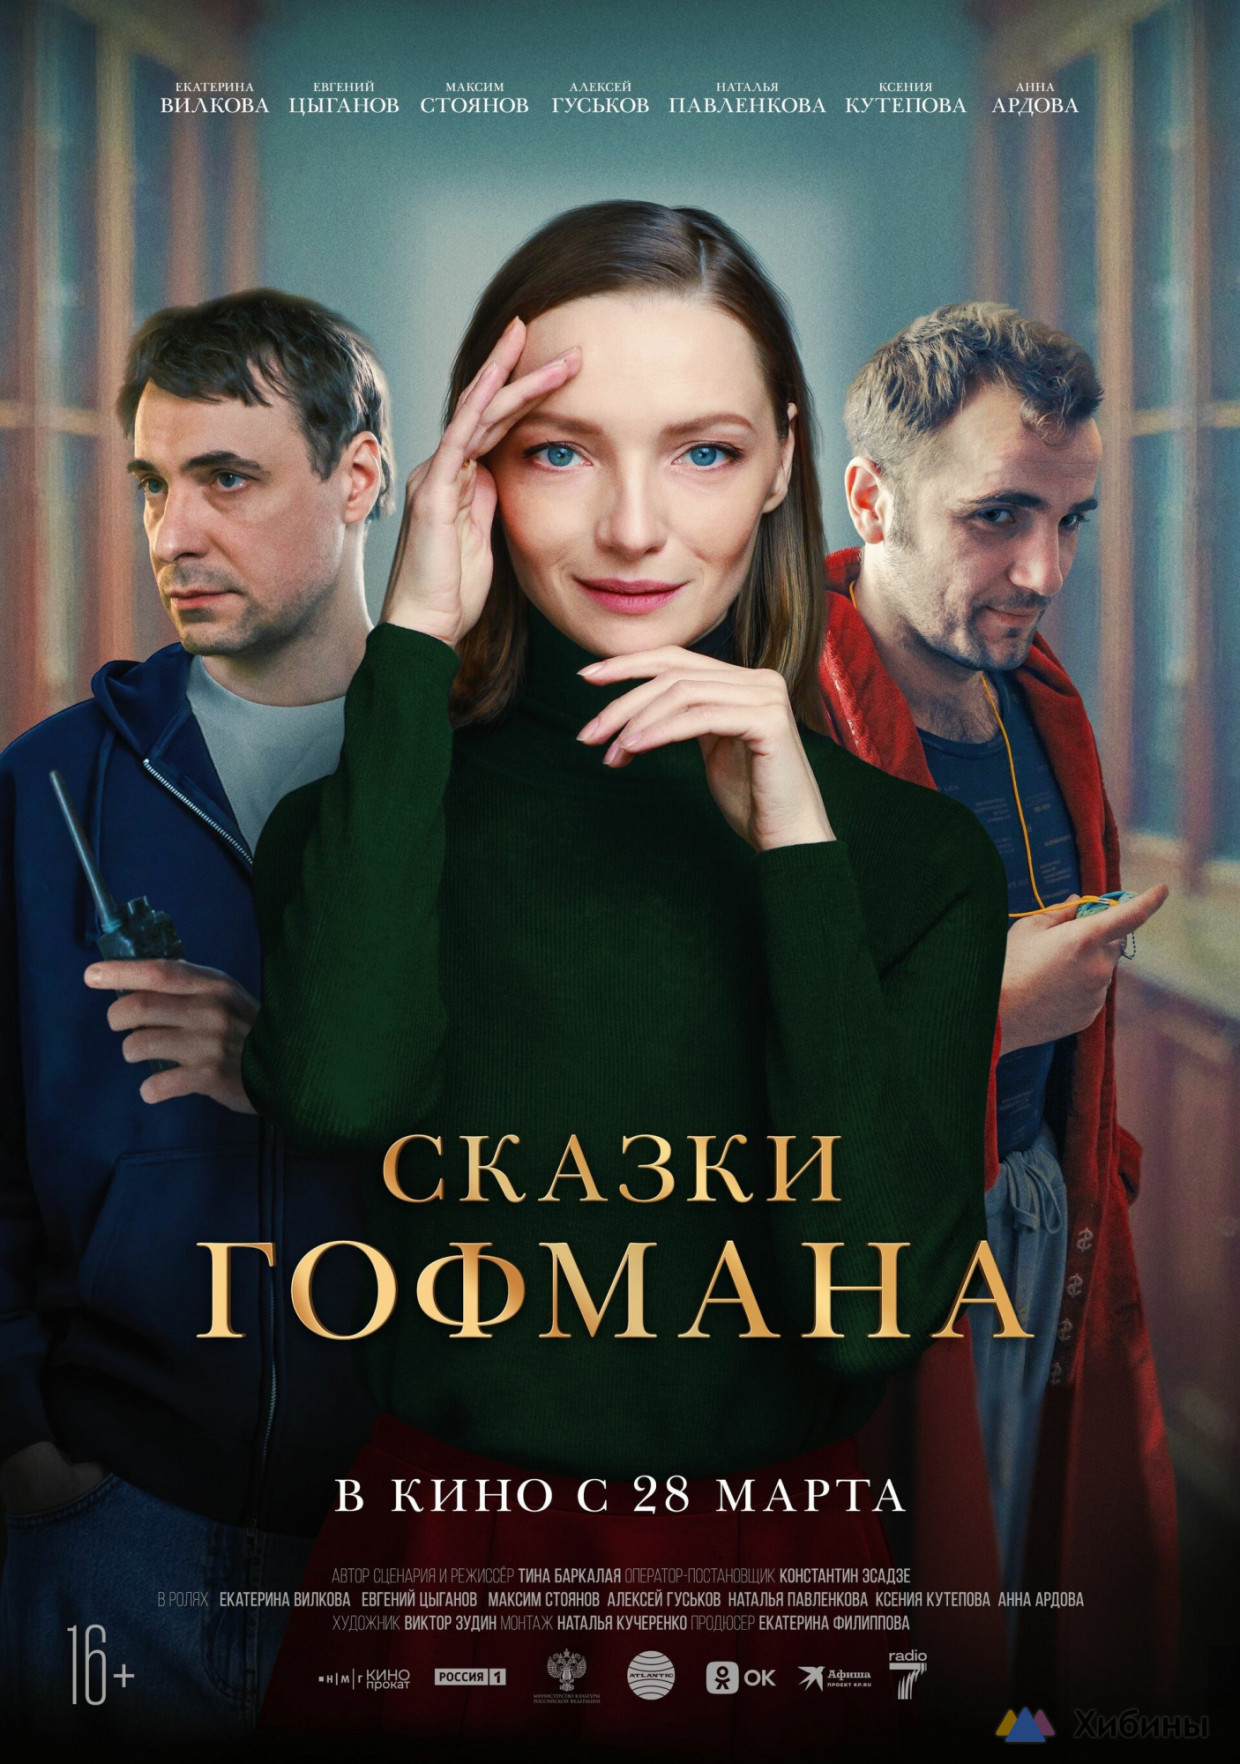 Интересные фильмы на ближайшую неделю, которые идут в Мурманской области